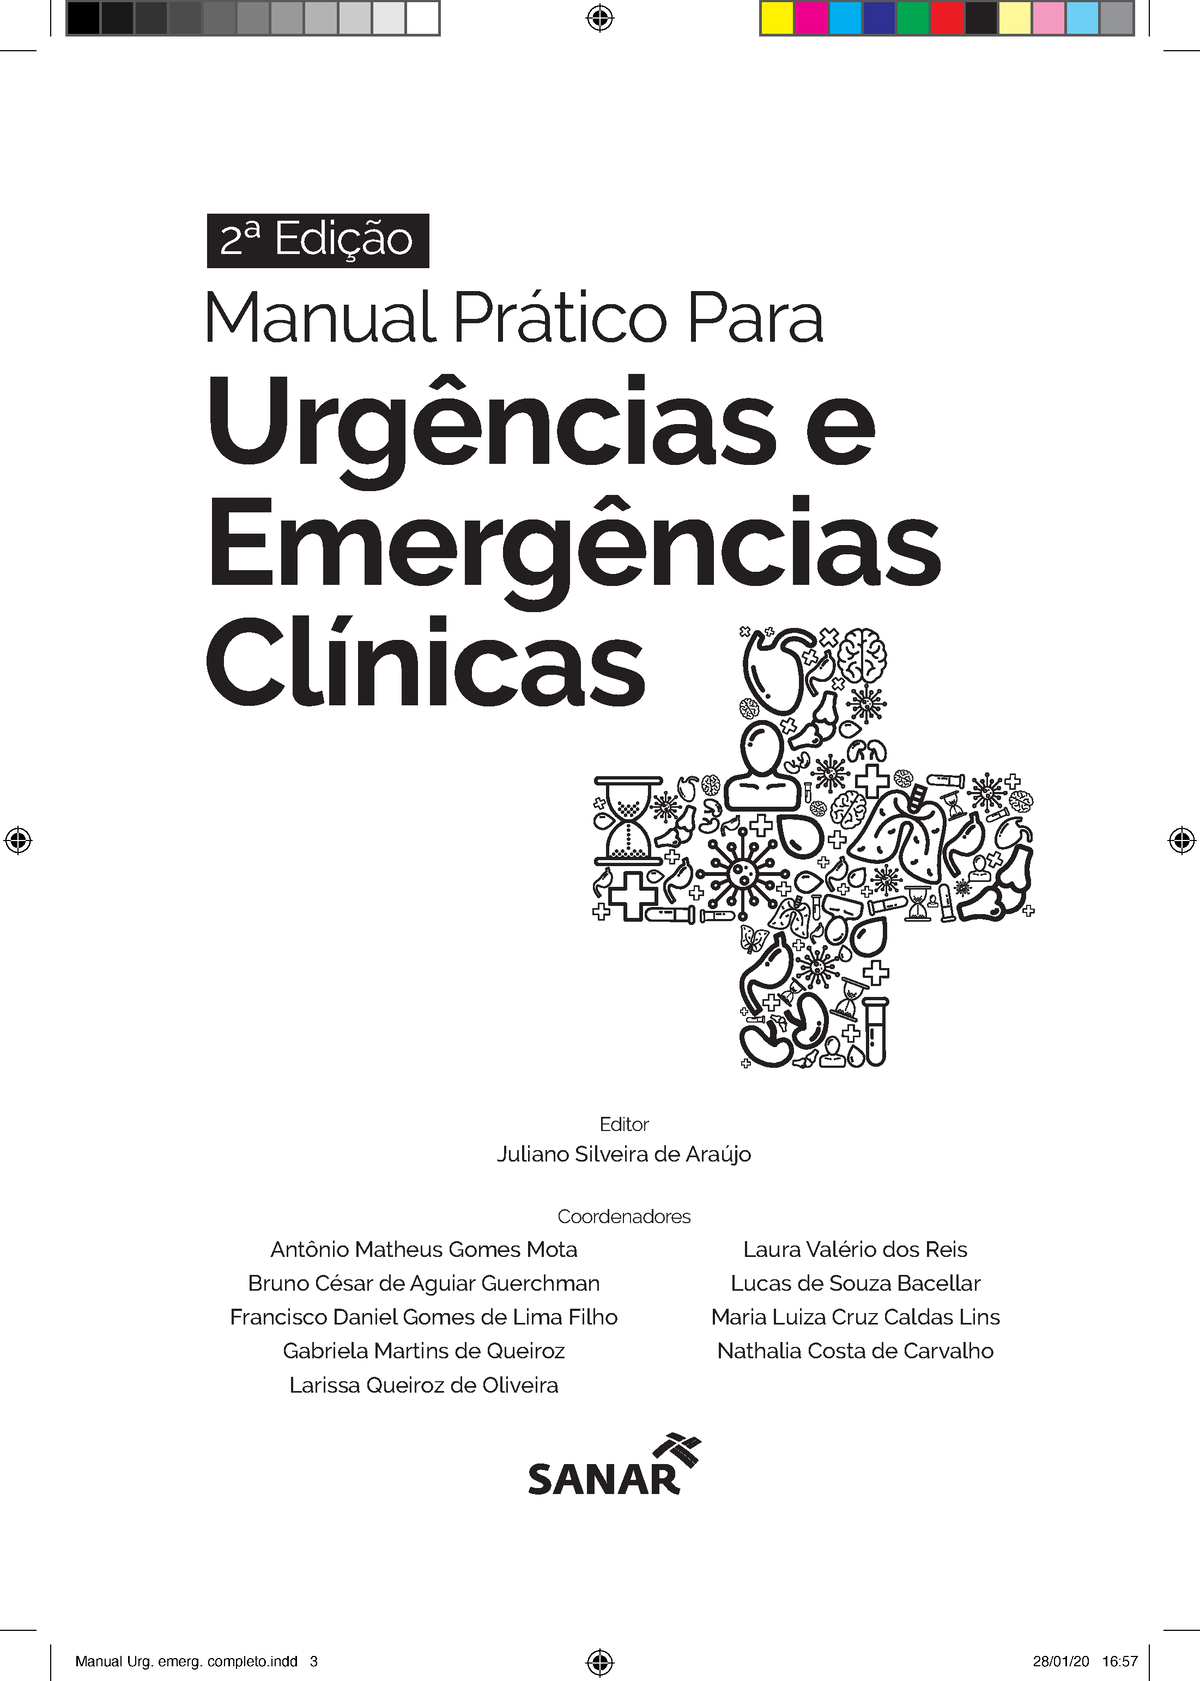 Manual De Urgência E Emergência Manual Prático Para Urgências E Emergências Clínicas 2ª Edição 1370